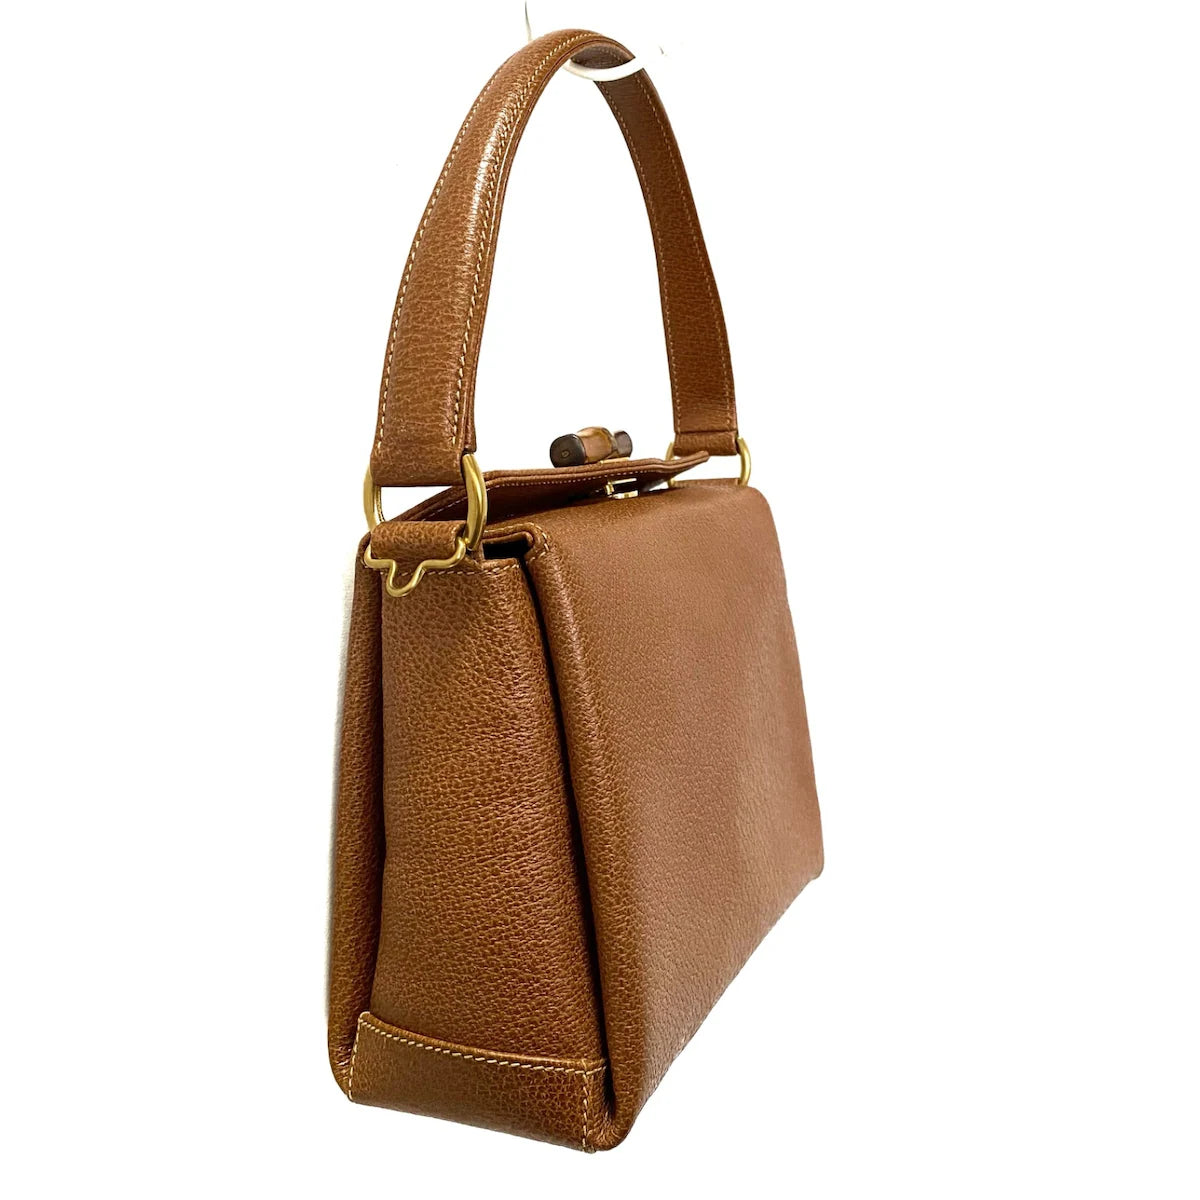 GUCCI - Bamboo Handbag